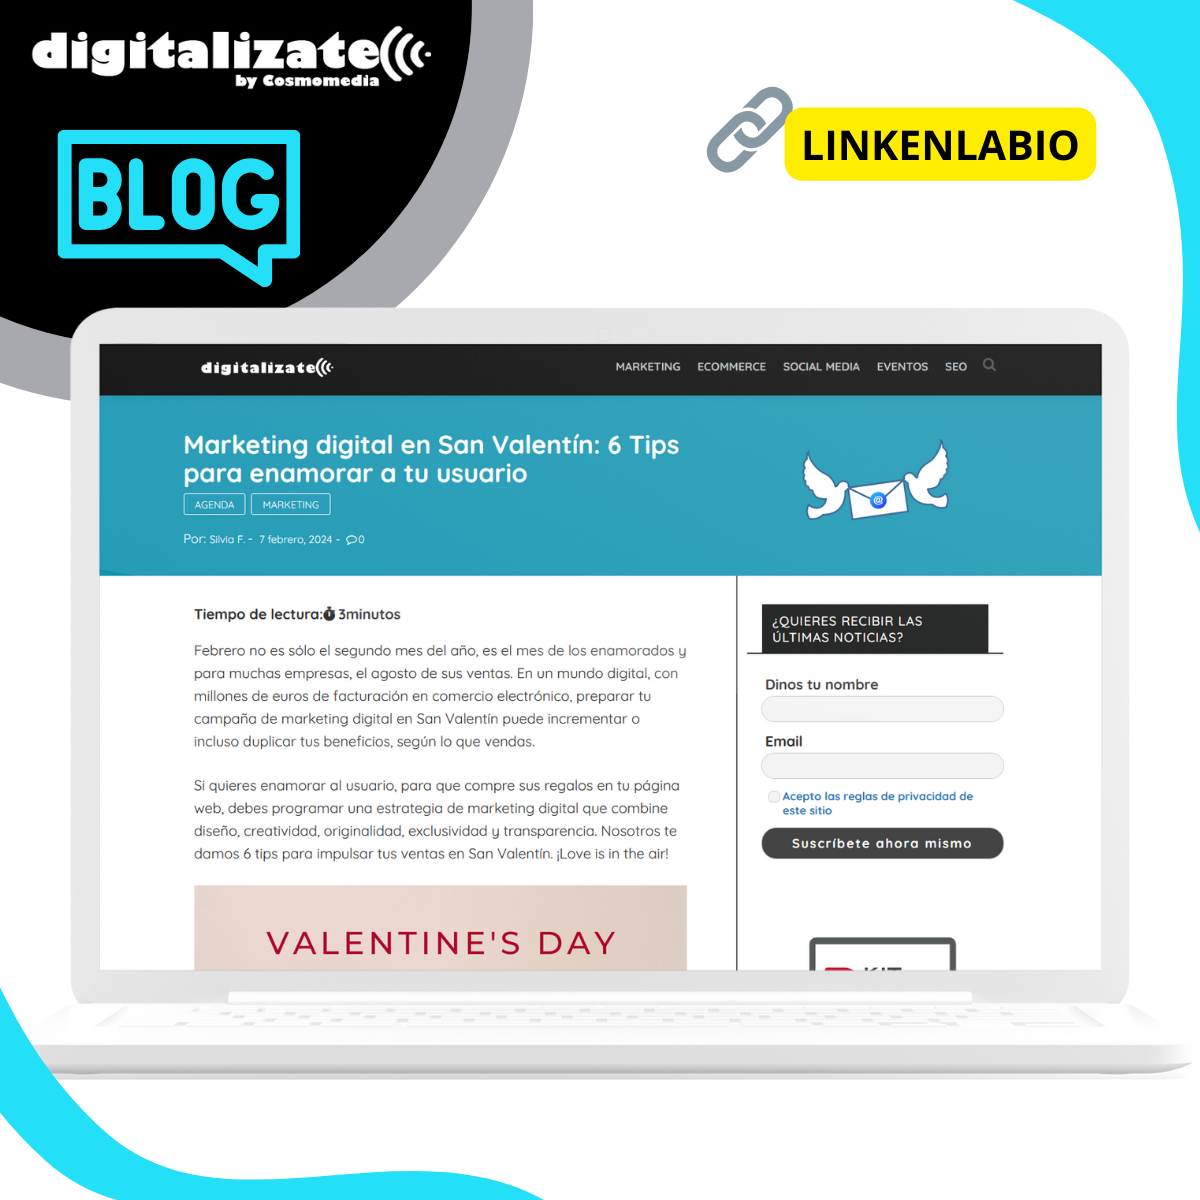 Marketing digital en San Valentín   6 Tips para enamorar a tu usuario